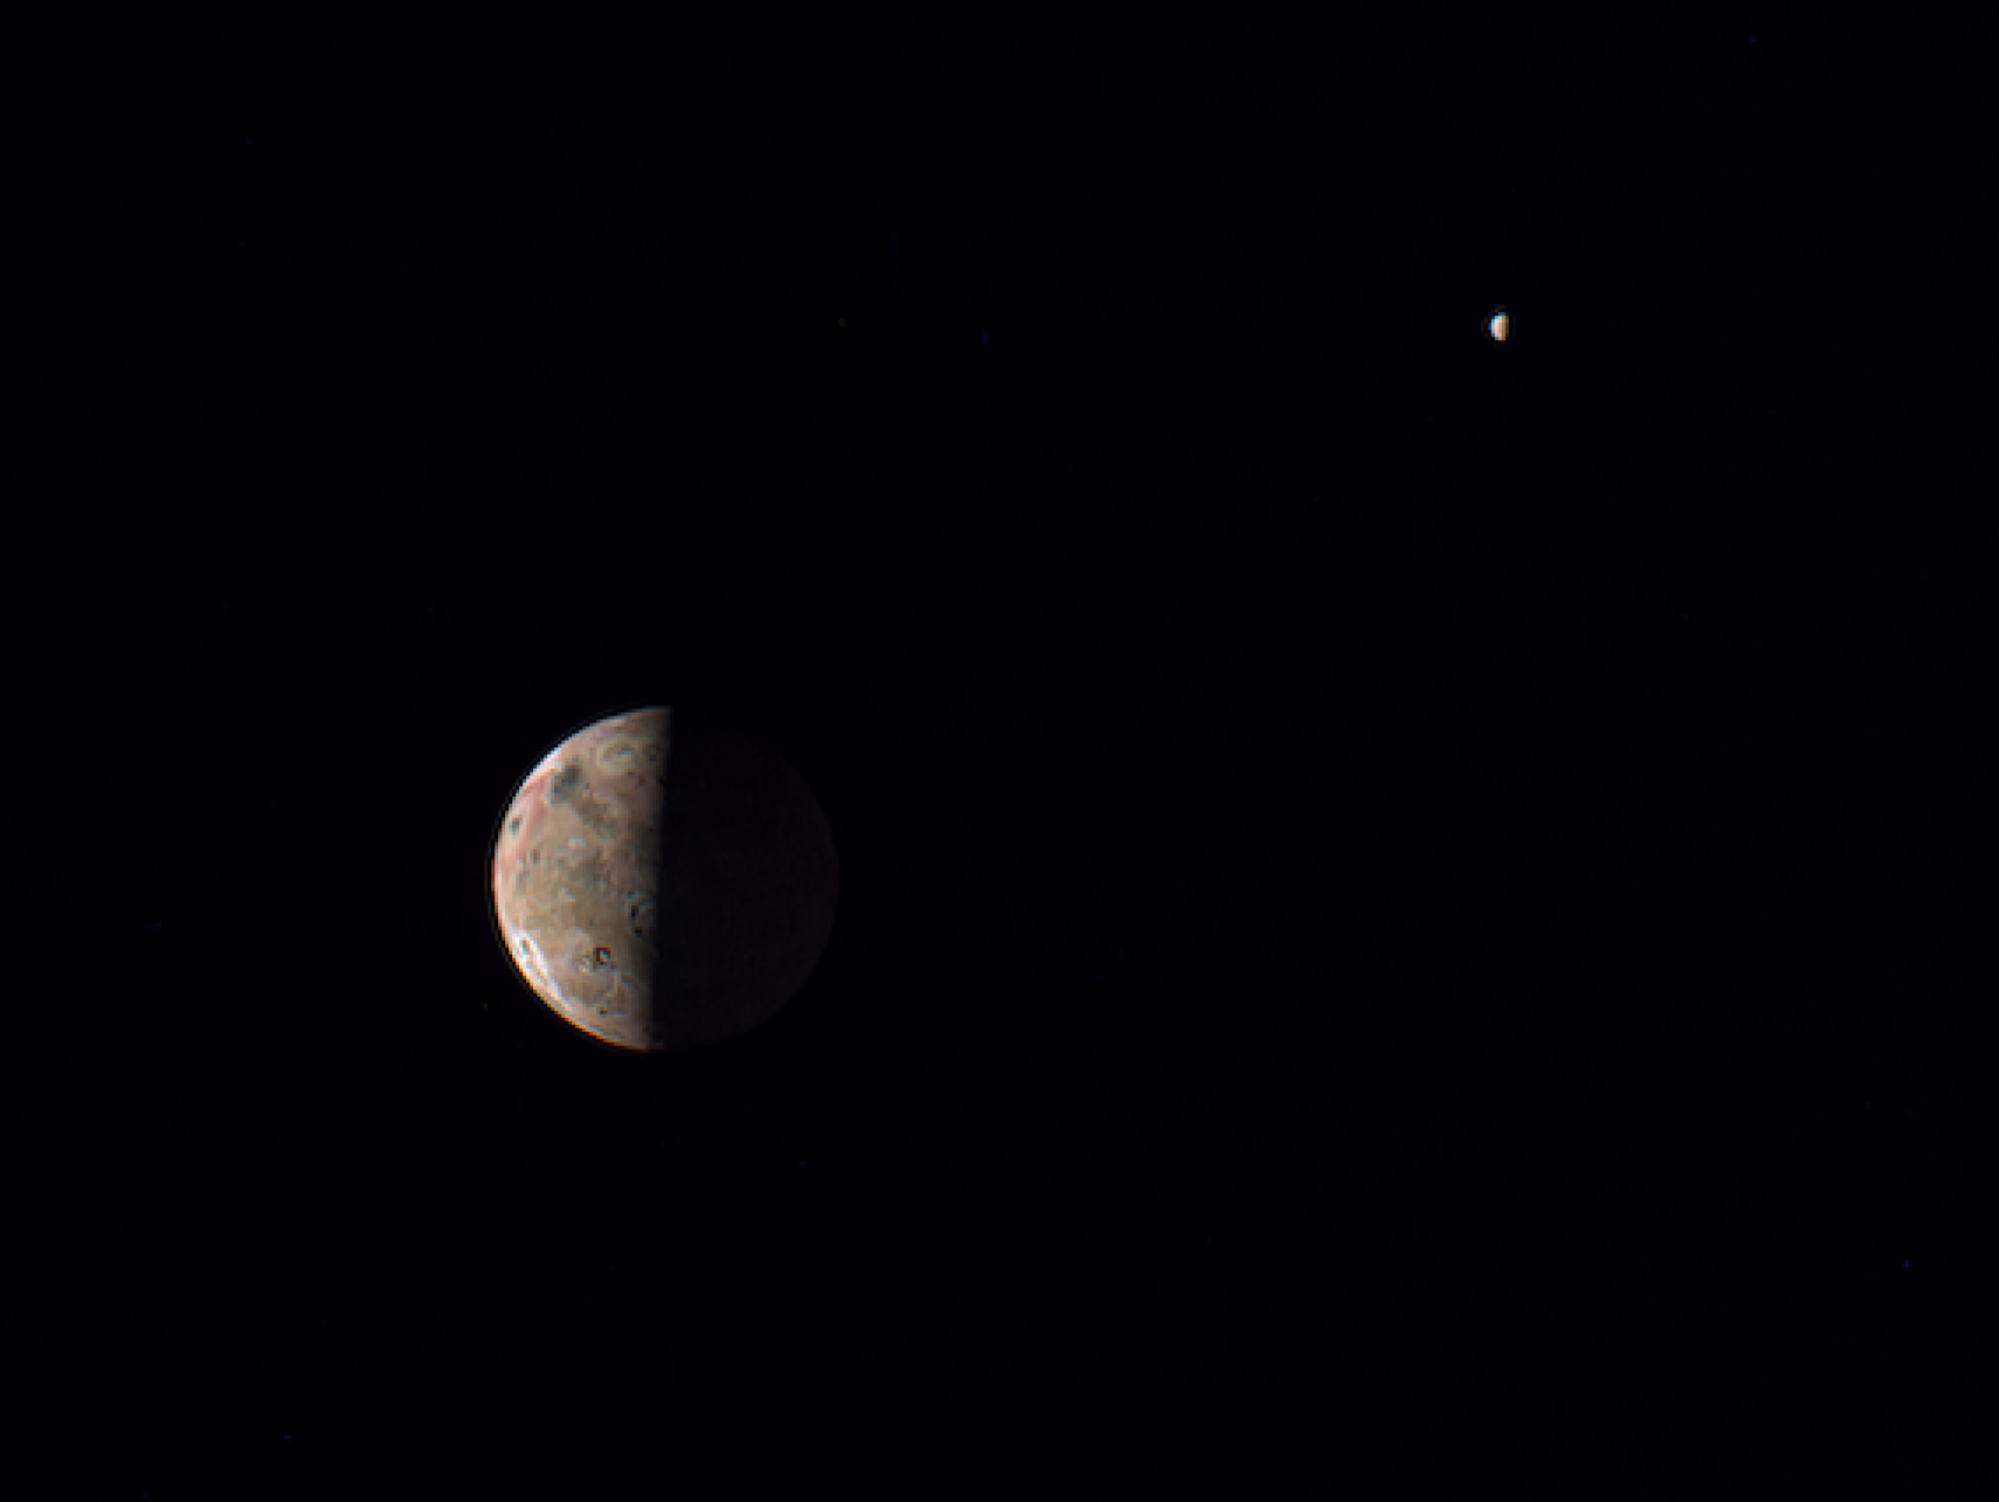 La lune jovienne Io, au premier plan, avec la lune Europe recouverte de glace au loin.